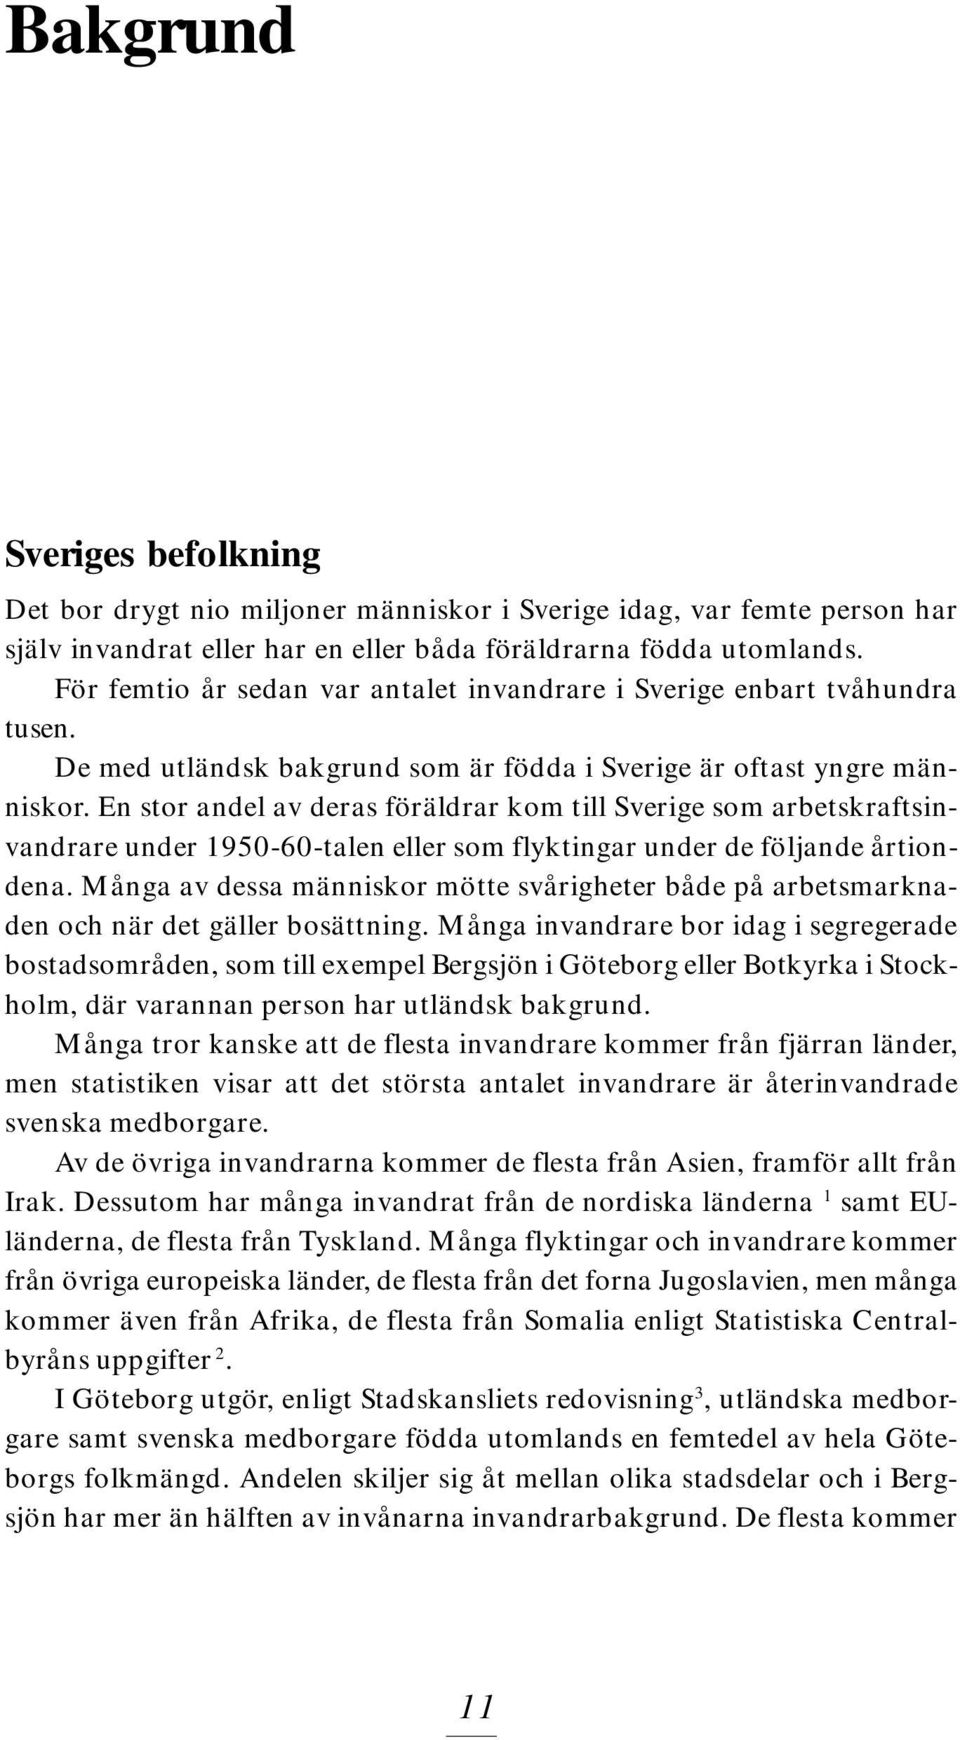 En stor andel av deras föräldrar kom till Sverige som arbetskraftsinvandrare under 1950-60-talen eller som flyktingar under de följande årtiondena.